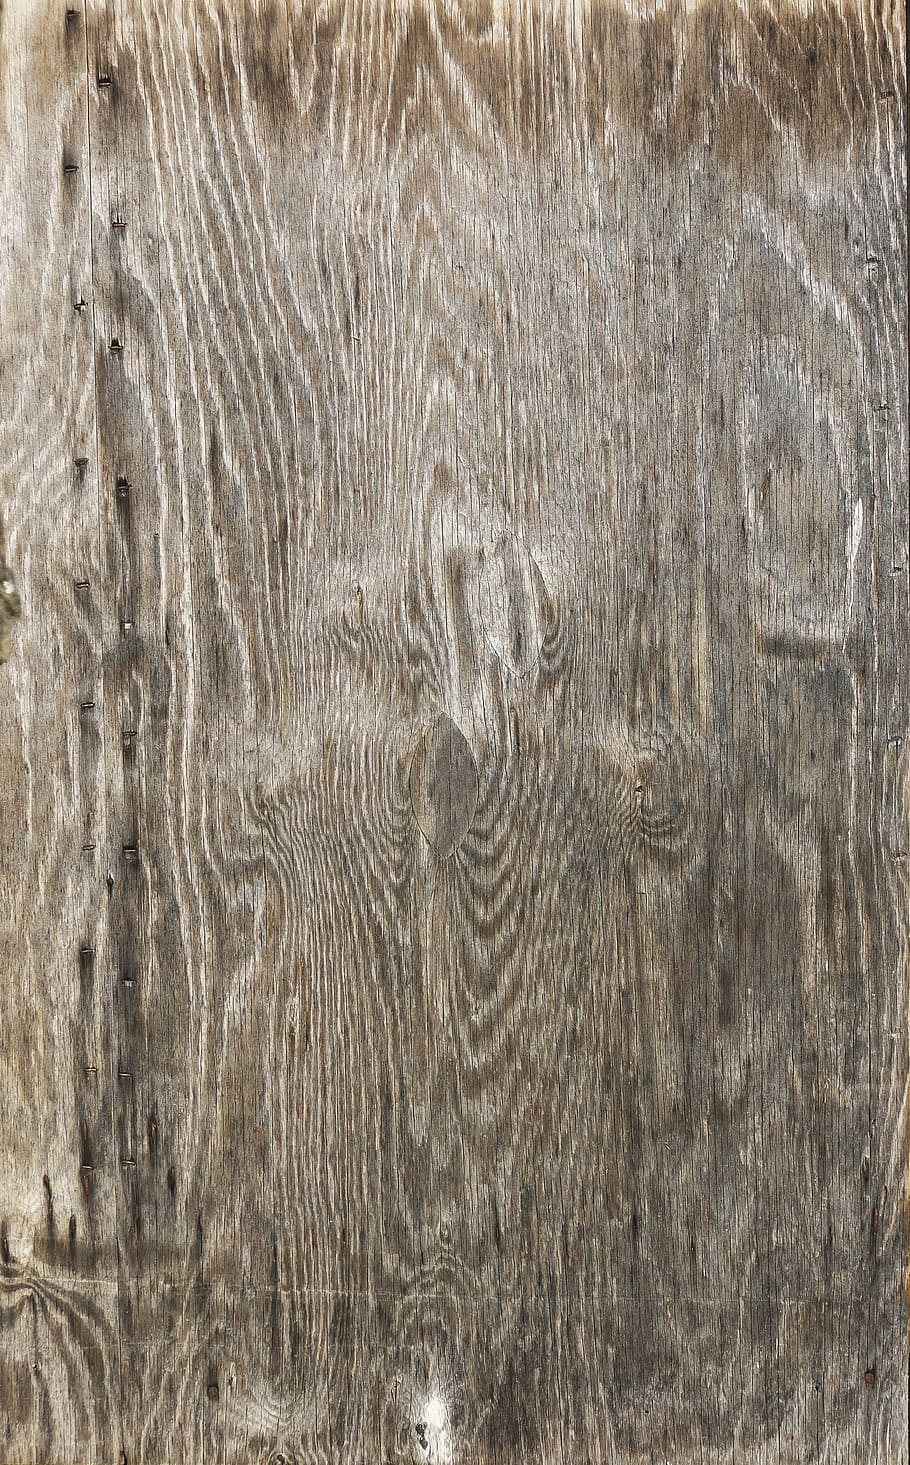 joiner plate, veneered, wood based panel, glued in place, deck veneer, it's shape, rigid, board, weathered, veneer